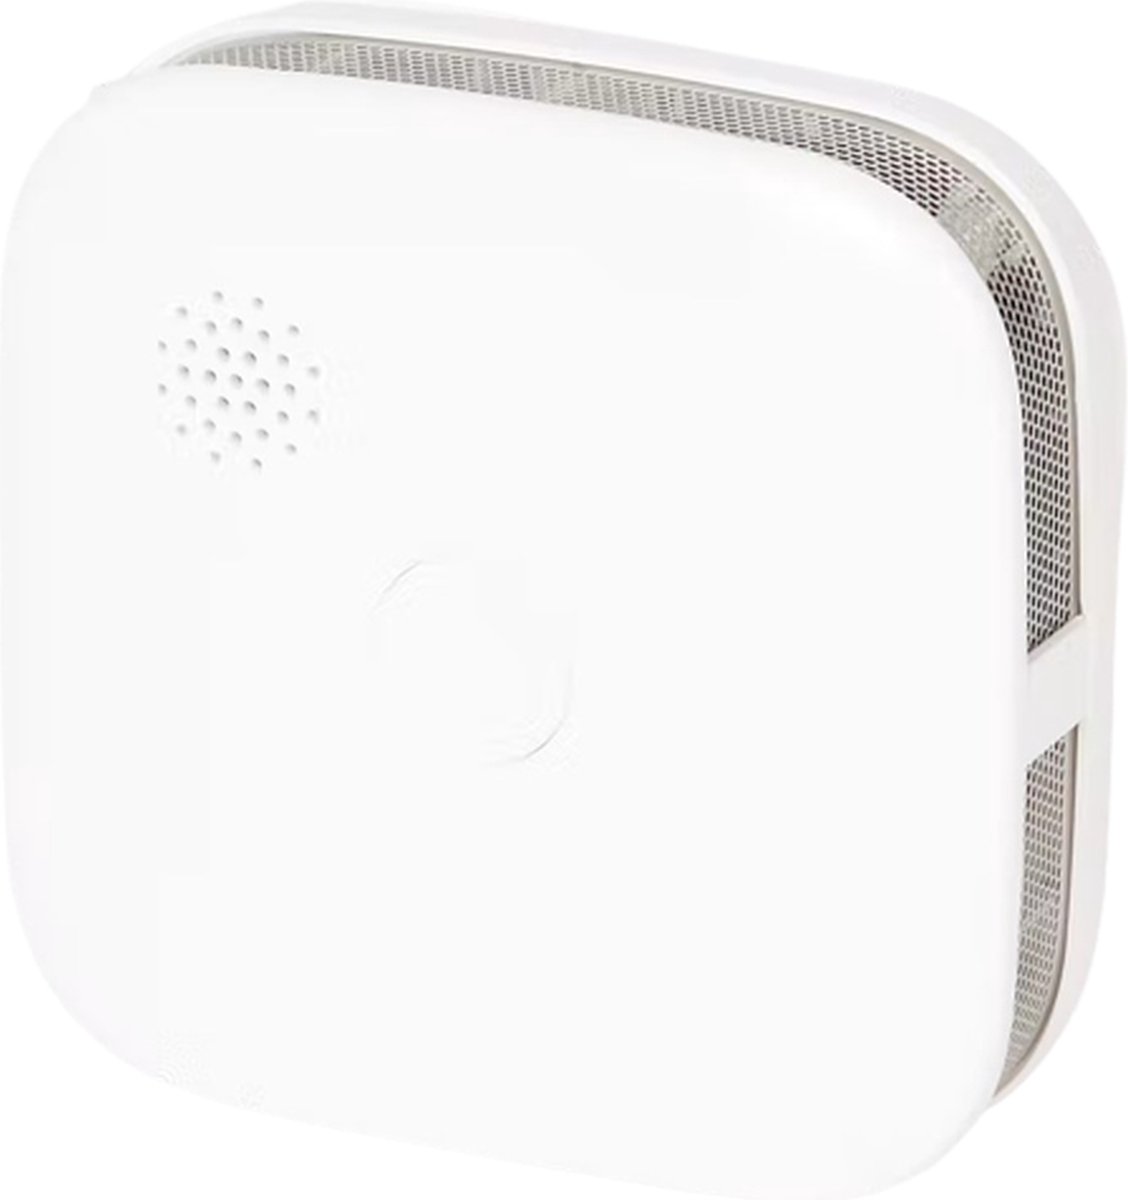 Slimme rookmelder via WiFi - Wit - Kunststof - 7,6 x 7,6 x 2,8 cm - WiFi - 2.4 GHz - Te bedienen met App - Smoke Alarm - Rook melder - Melder - Rook - Beveiliging - Slimme beveiliging - Thuis